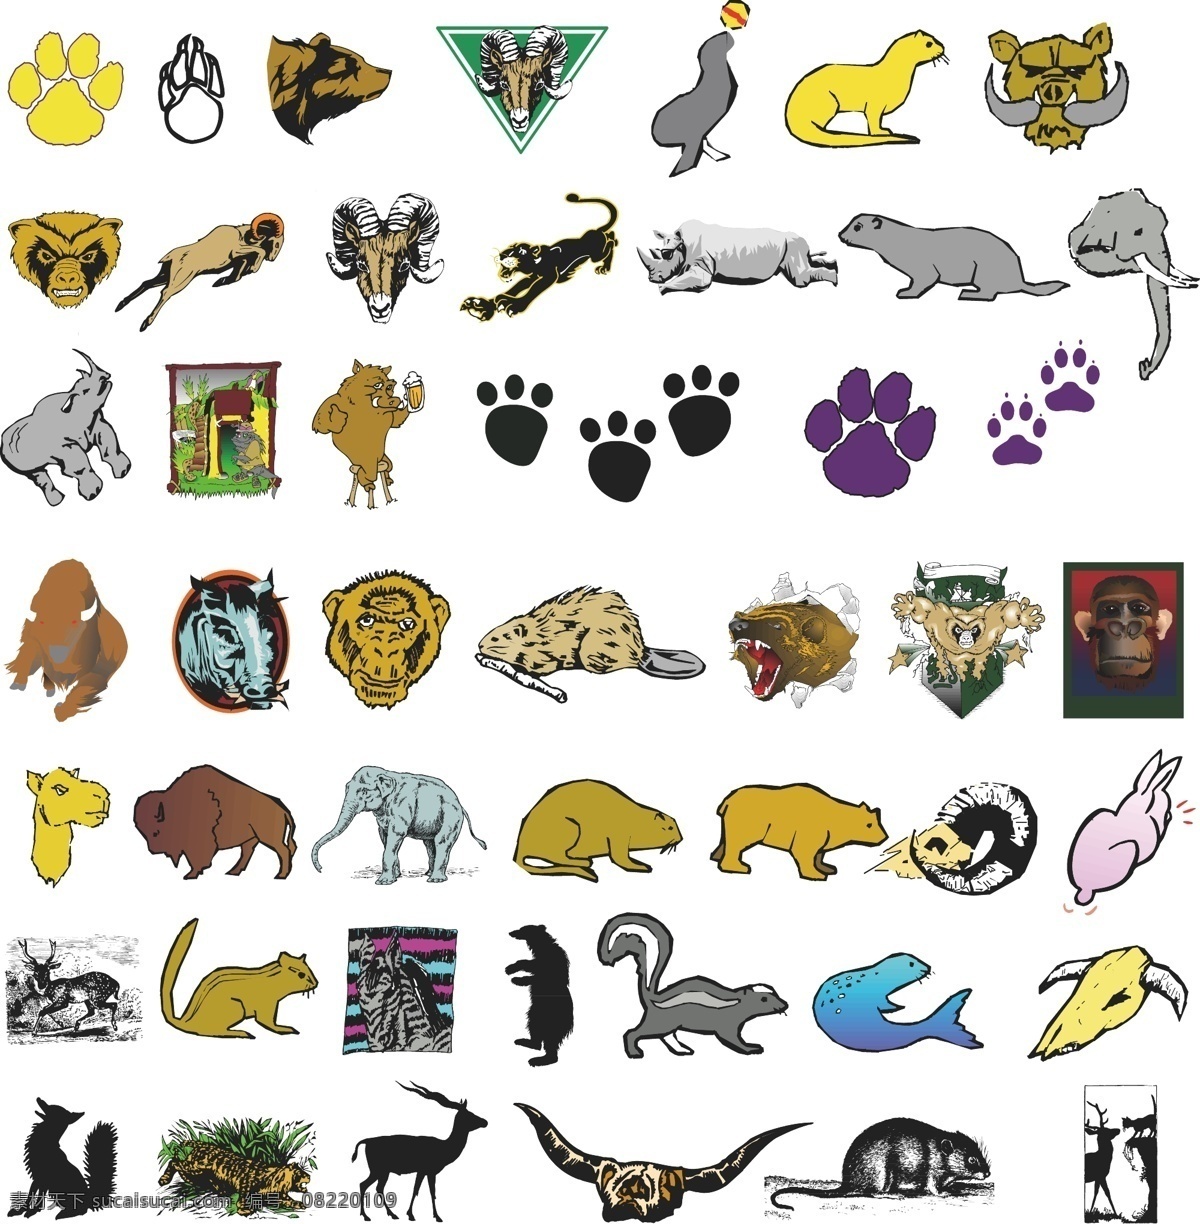 北极熊 标牌 标识 标志 大象 动物 剪影 欧式 森林 犀牛 海狮 生活 图案 矢量 模板下载 图标 小元素 动物图形元素 野生动物 生物世界 矢量图 其他矢量图